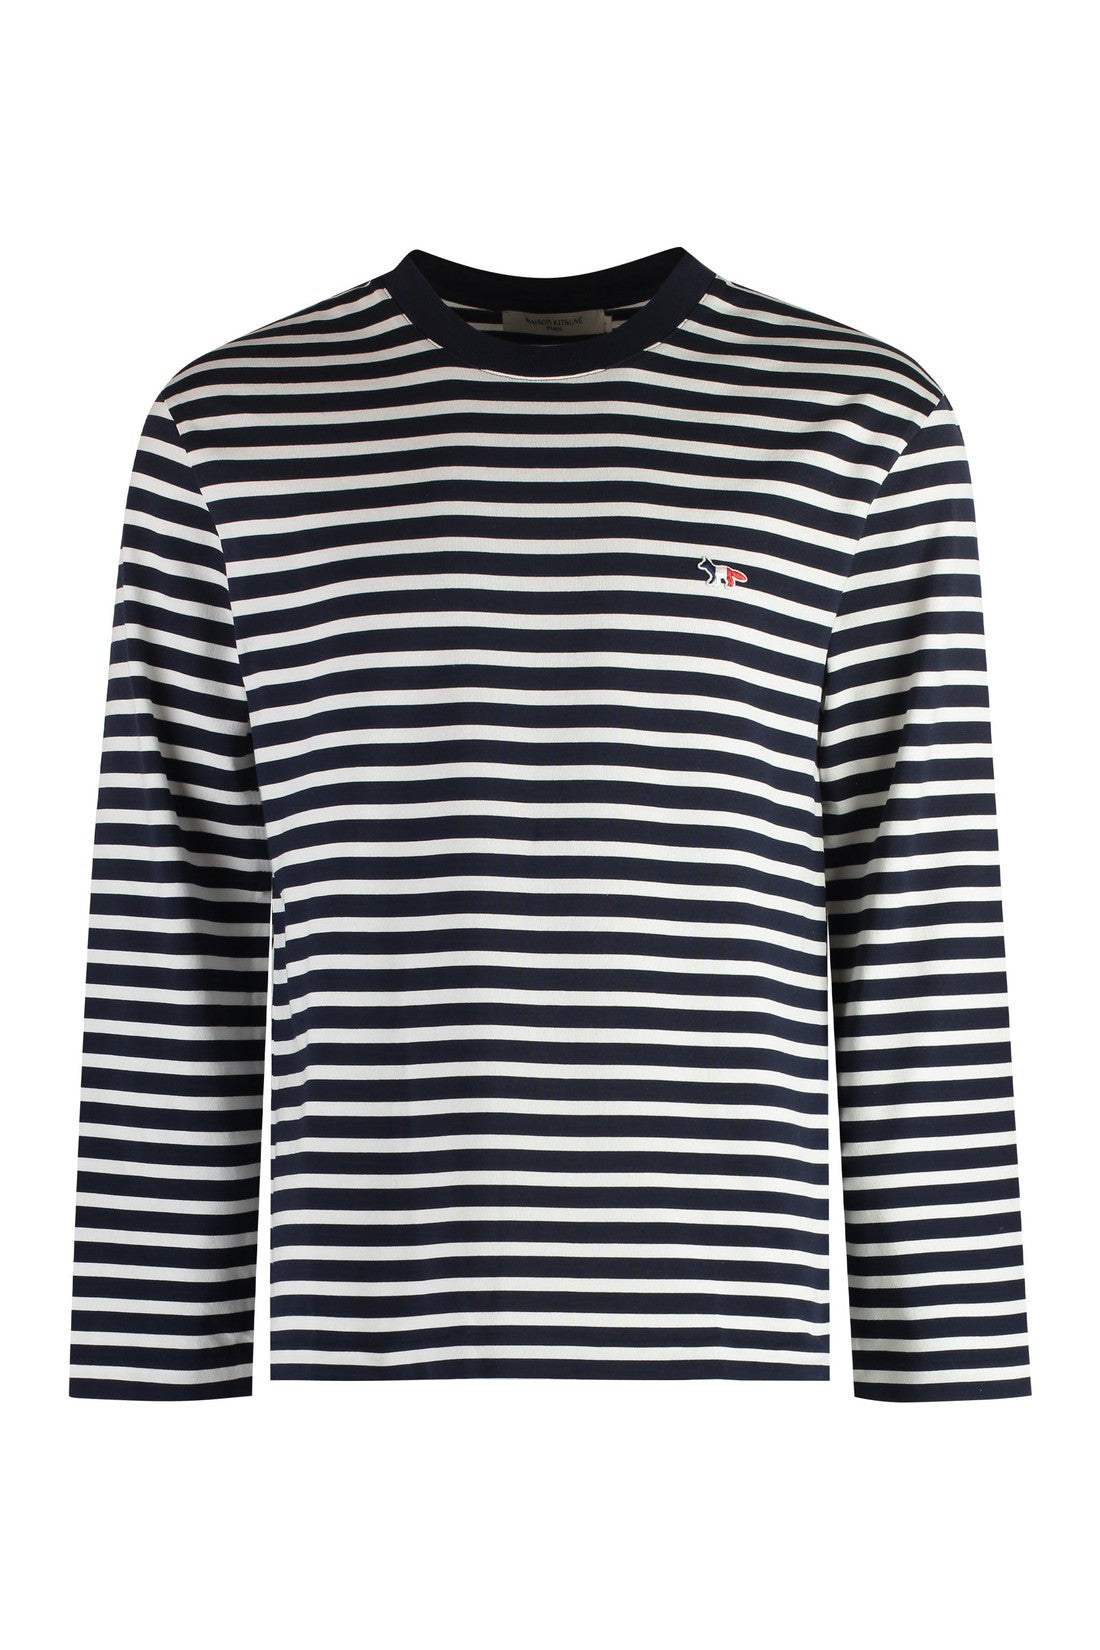 Maison Kitsuné-OUTLET-SALE-Striped cotton t-shirt-ARCHIVIST